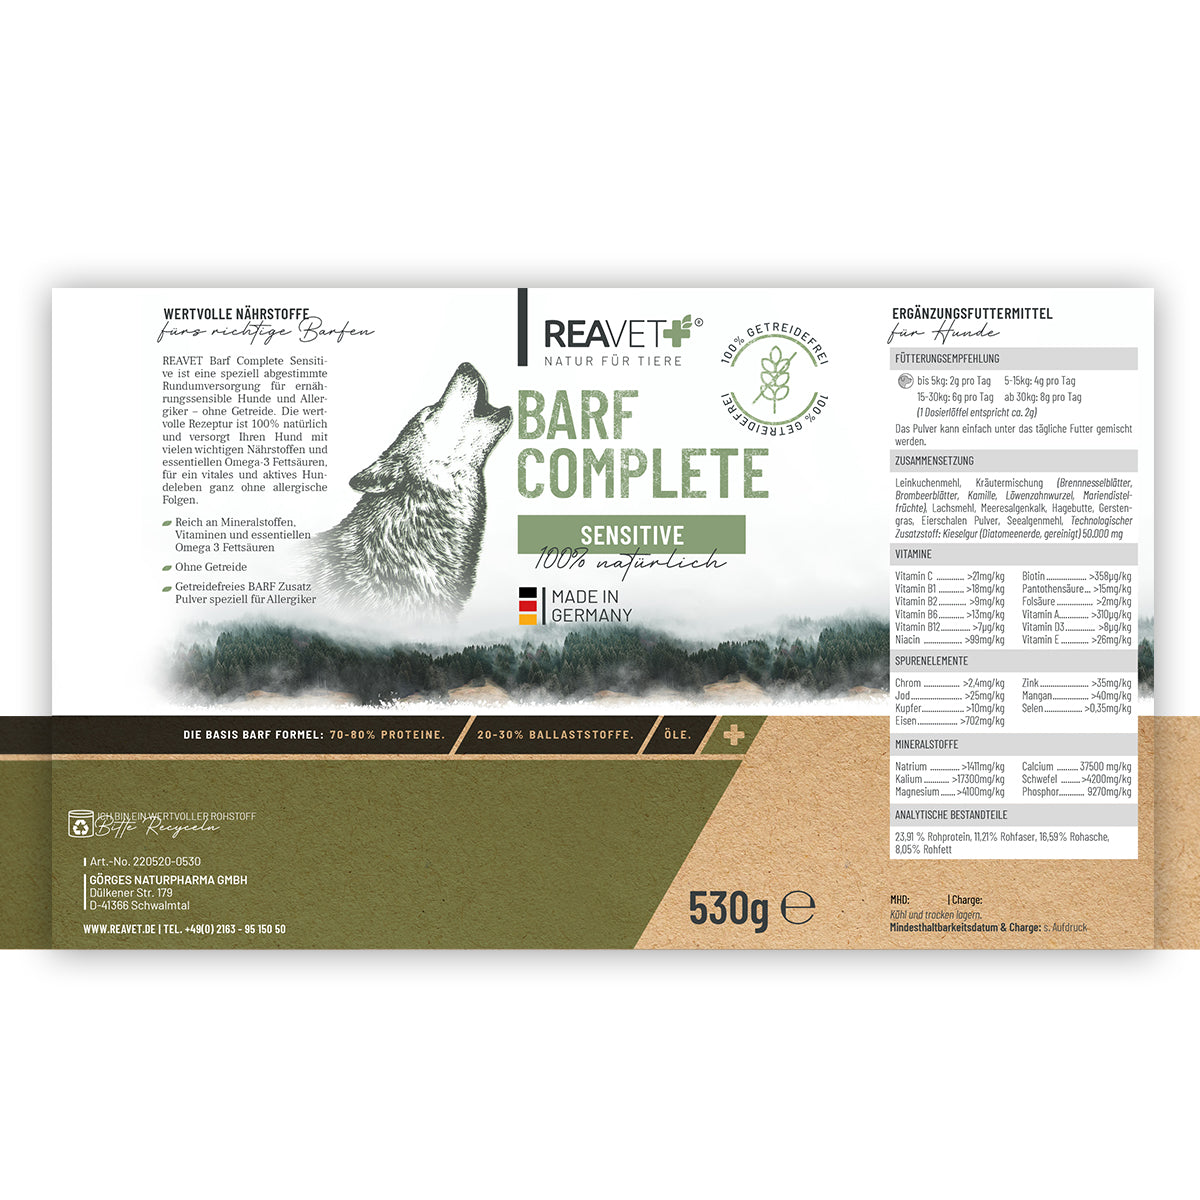 ReaVet-Barf-Complete-Sensitive-530g-Etikett